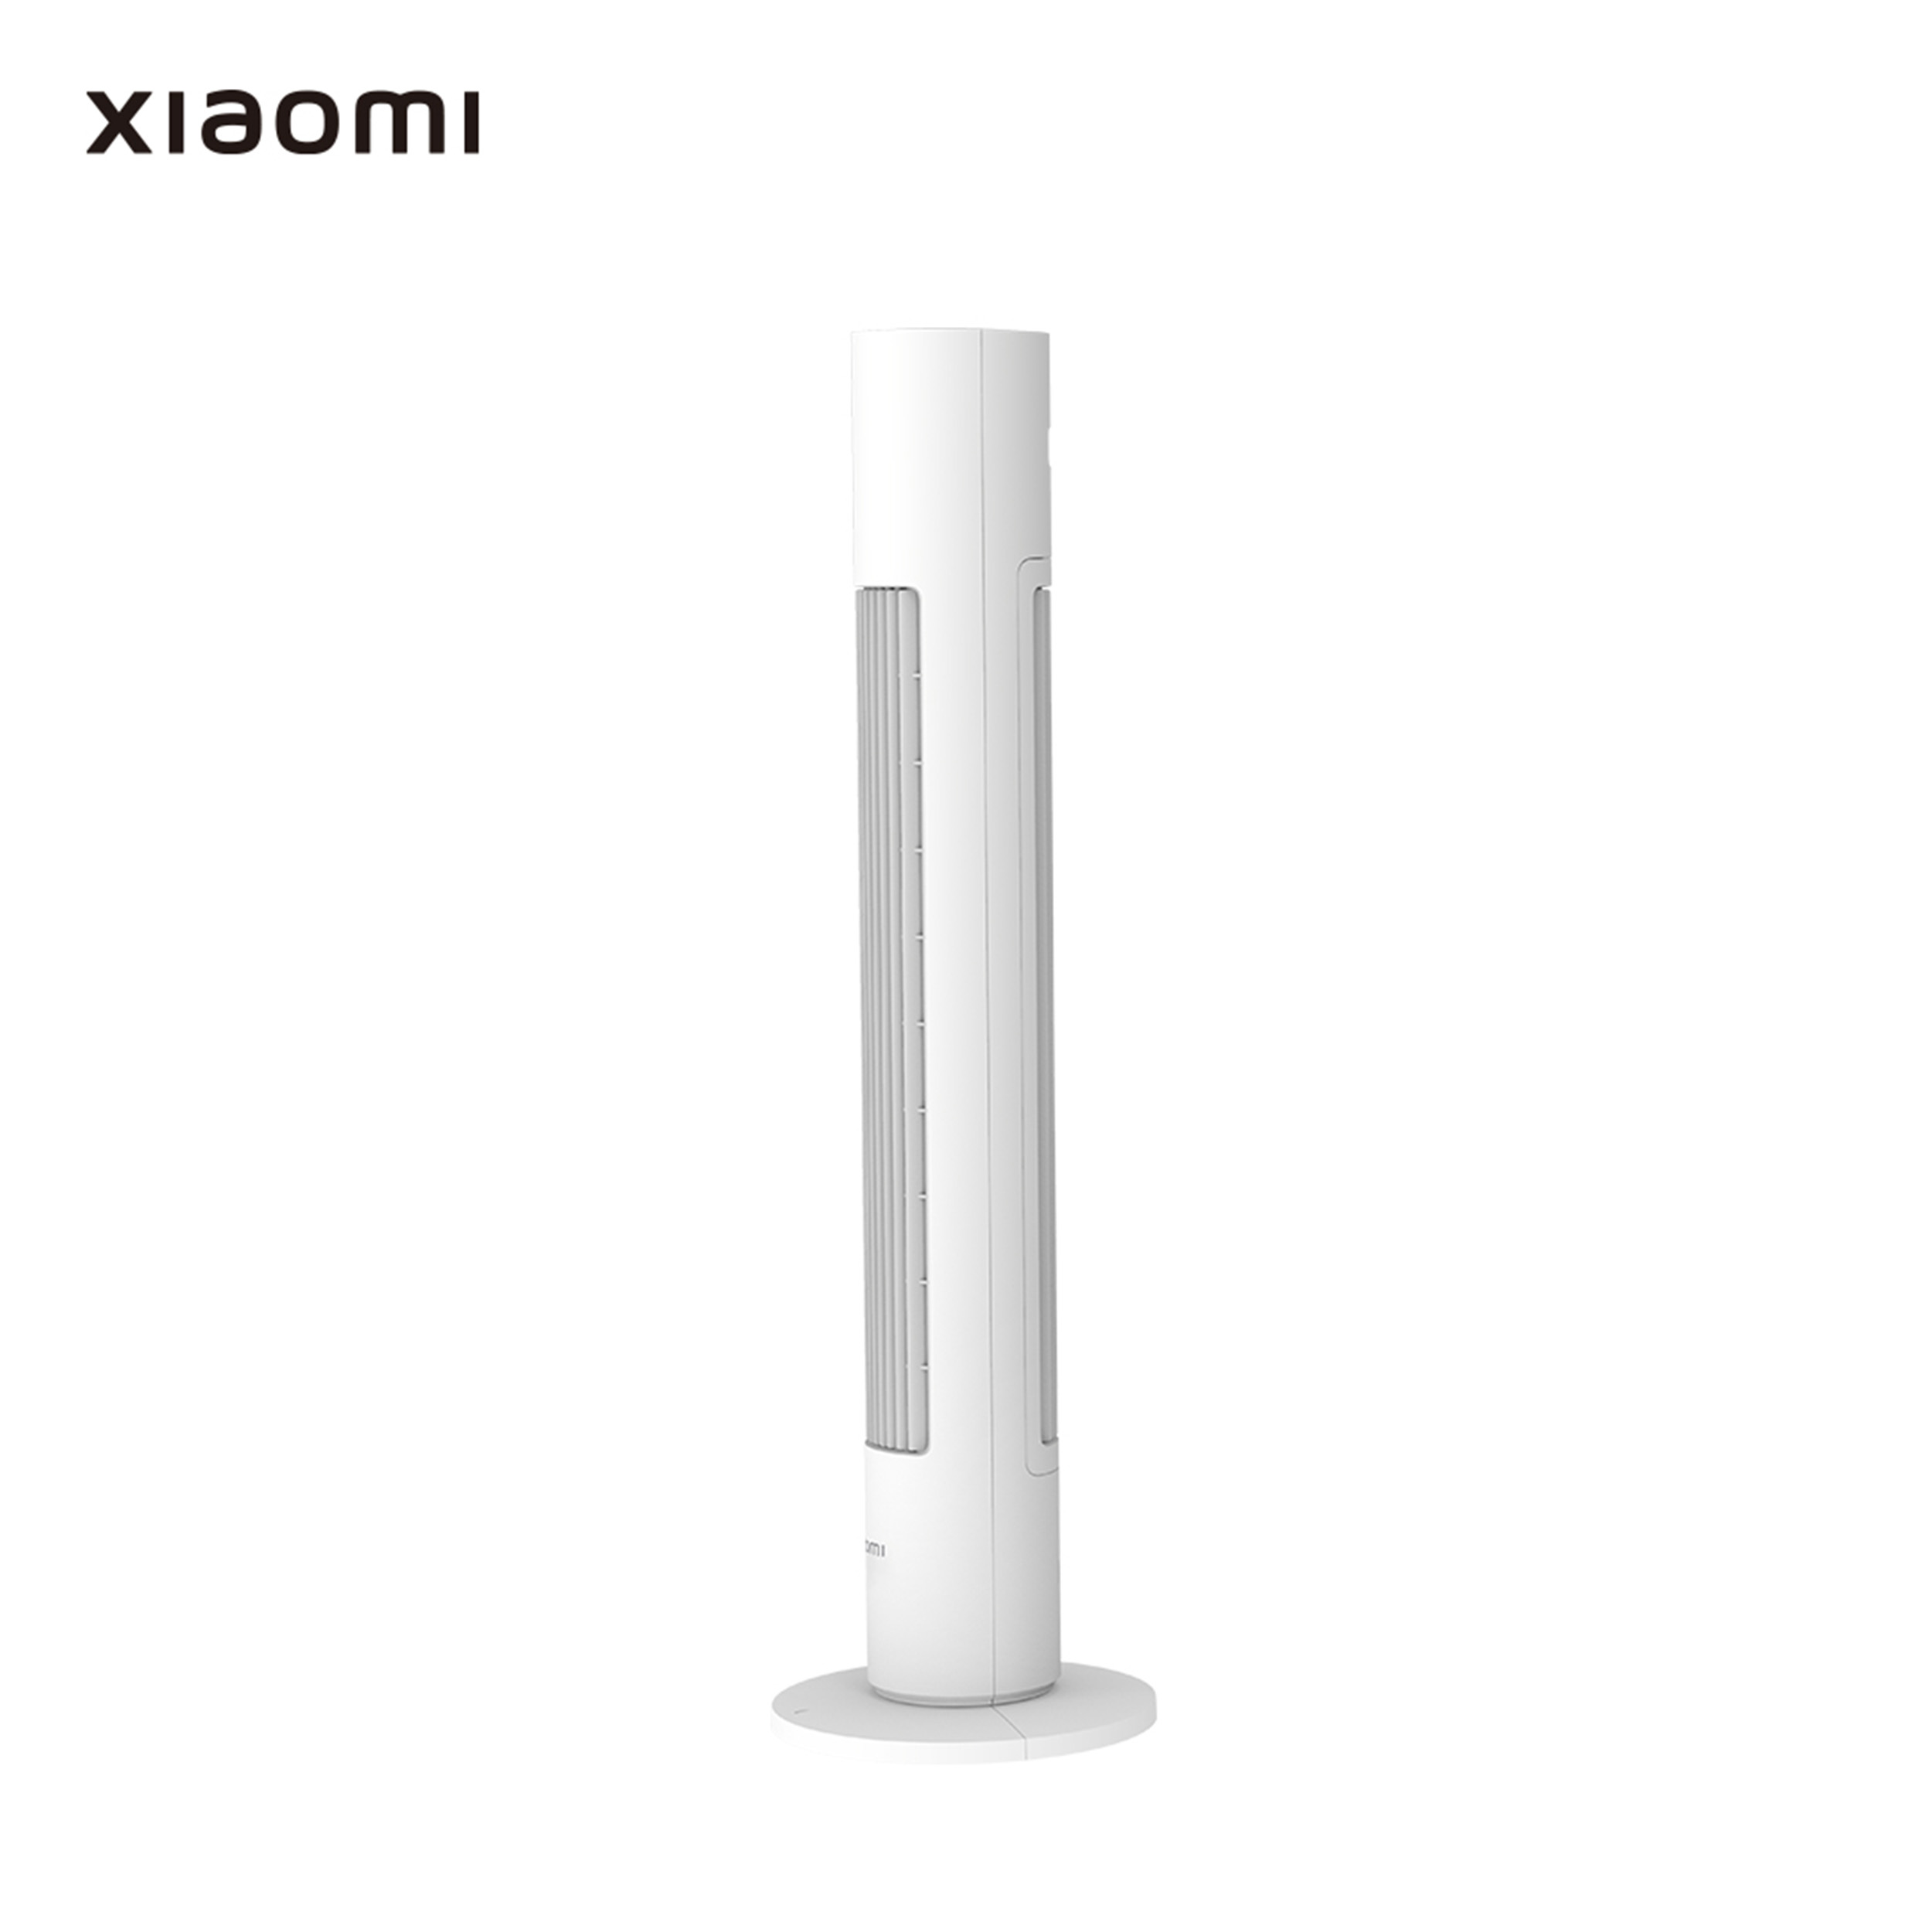 (22 Fan Watt) Turmventilator XIAOMI Smart Tower Weiss